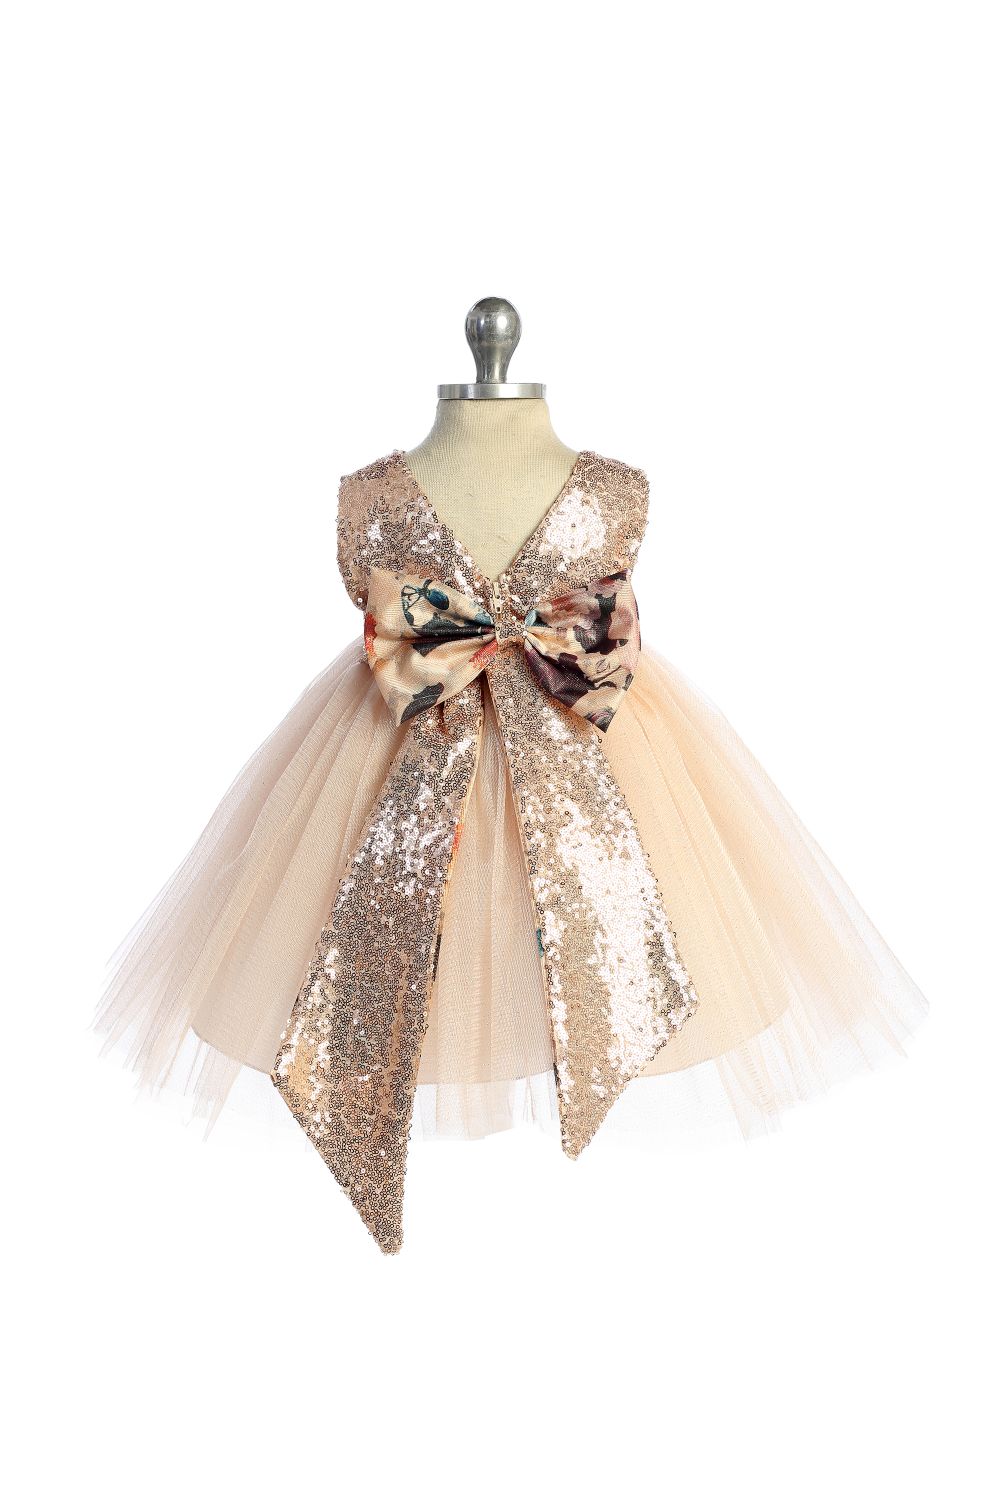 Baby Girl Vintage Floral Rose Gold Sequin Back V Party Dress- AS520B Kids Dream